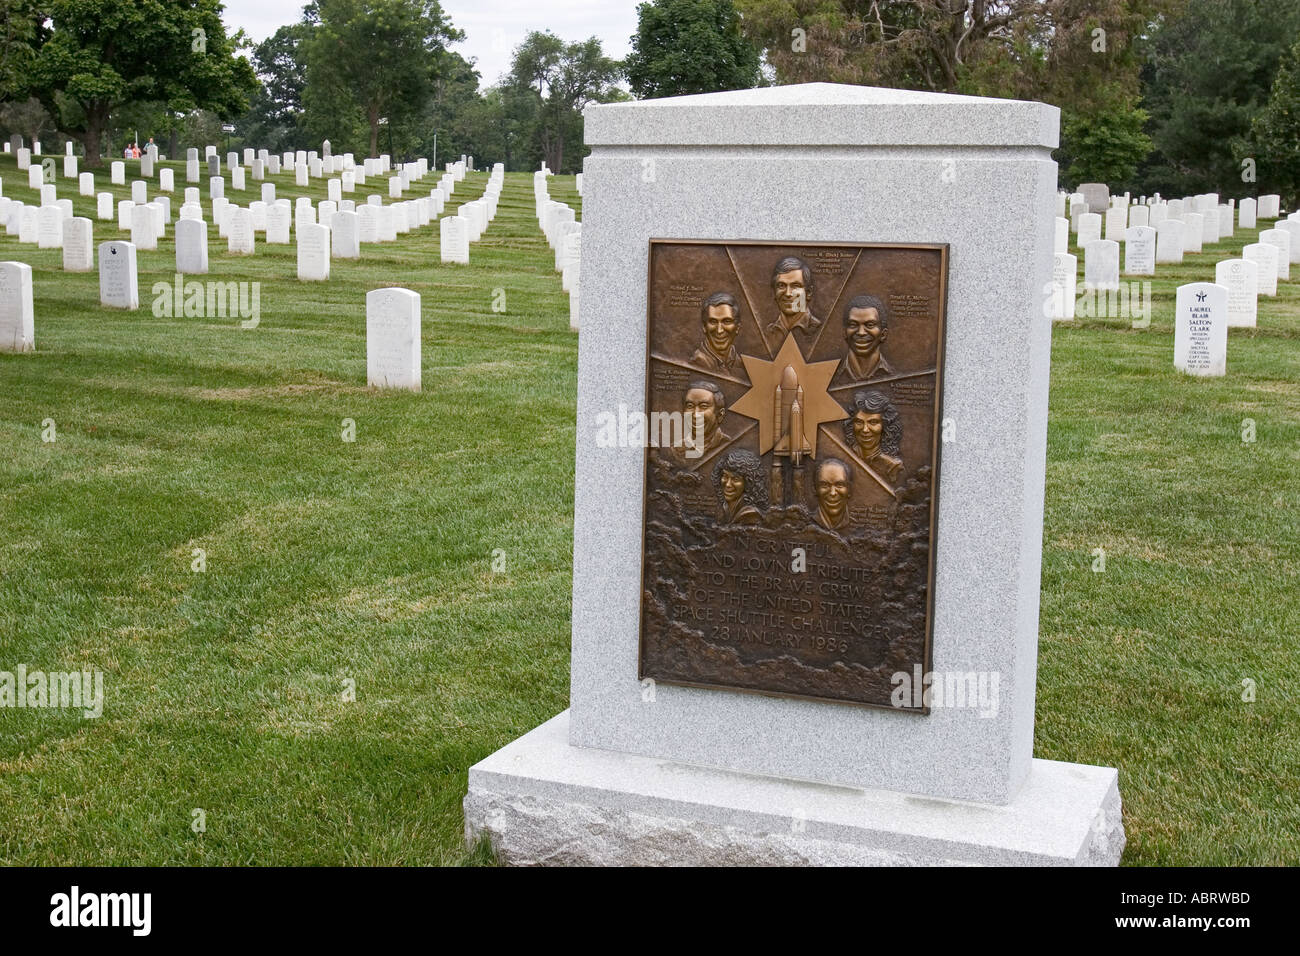 Mémorial de la navette spatiale Challenger au Arlington National Cemetery Banque D'Images